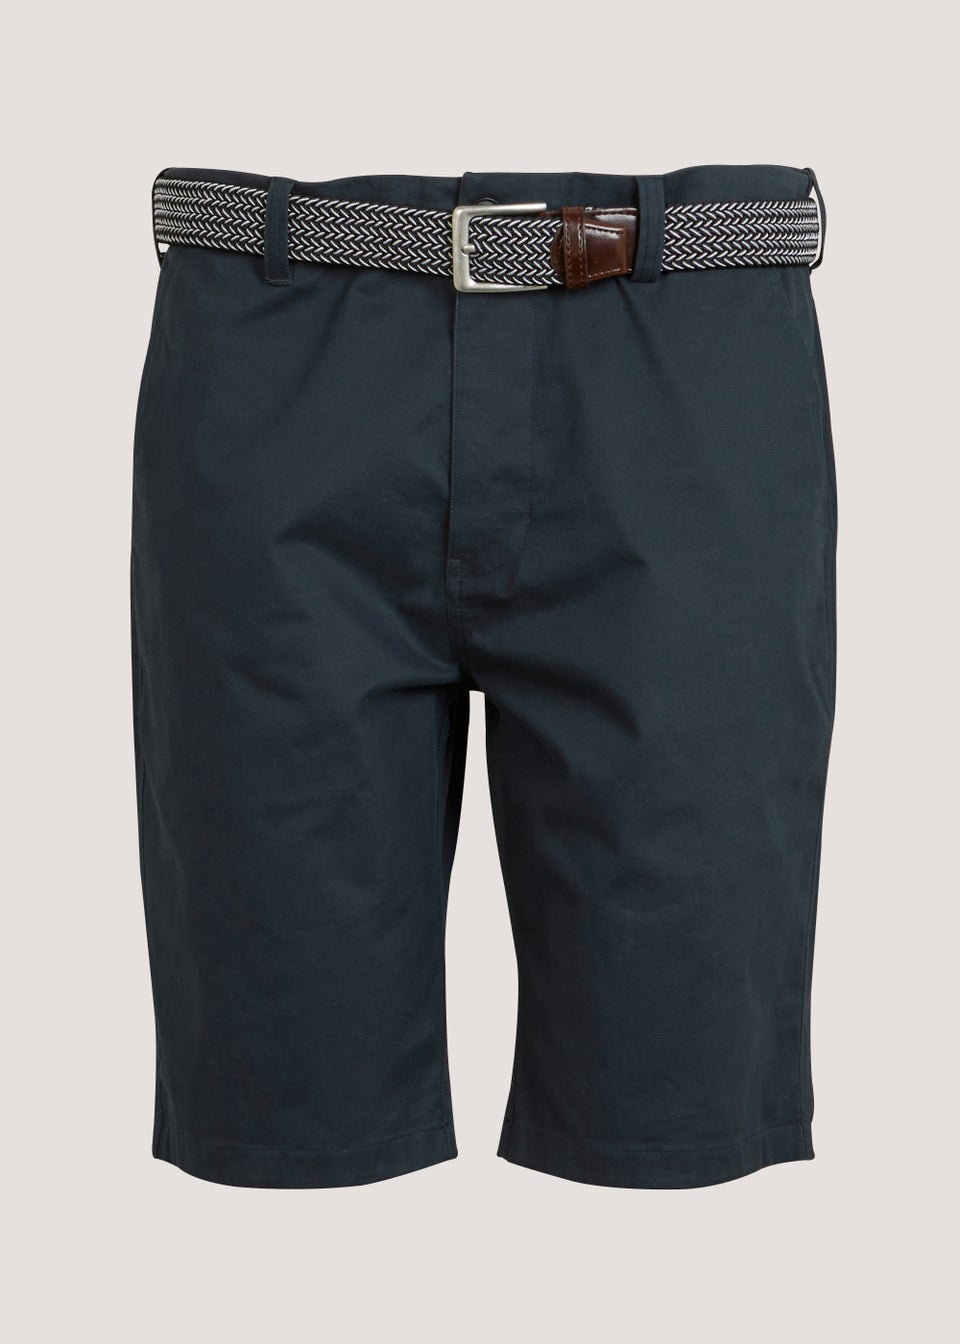 Lincoln Navy Belted Shorts - Matalan